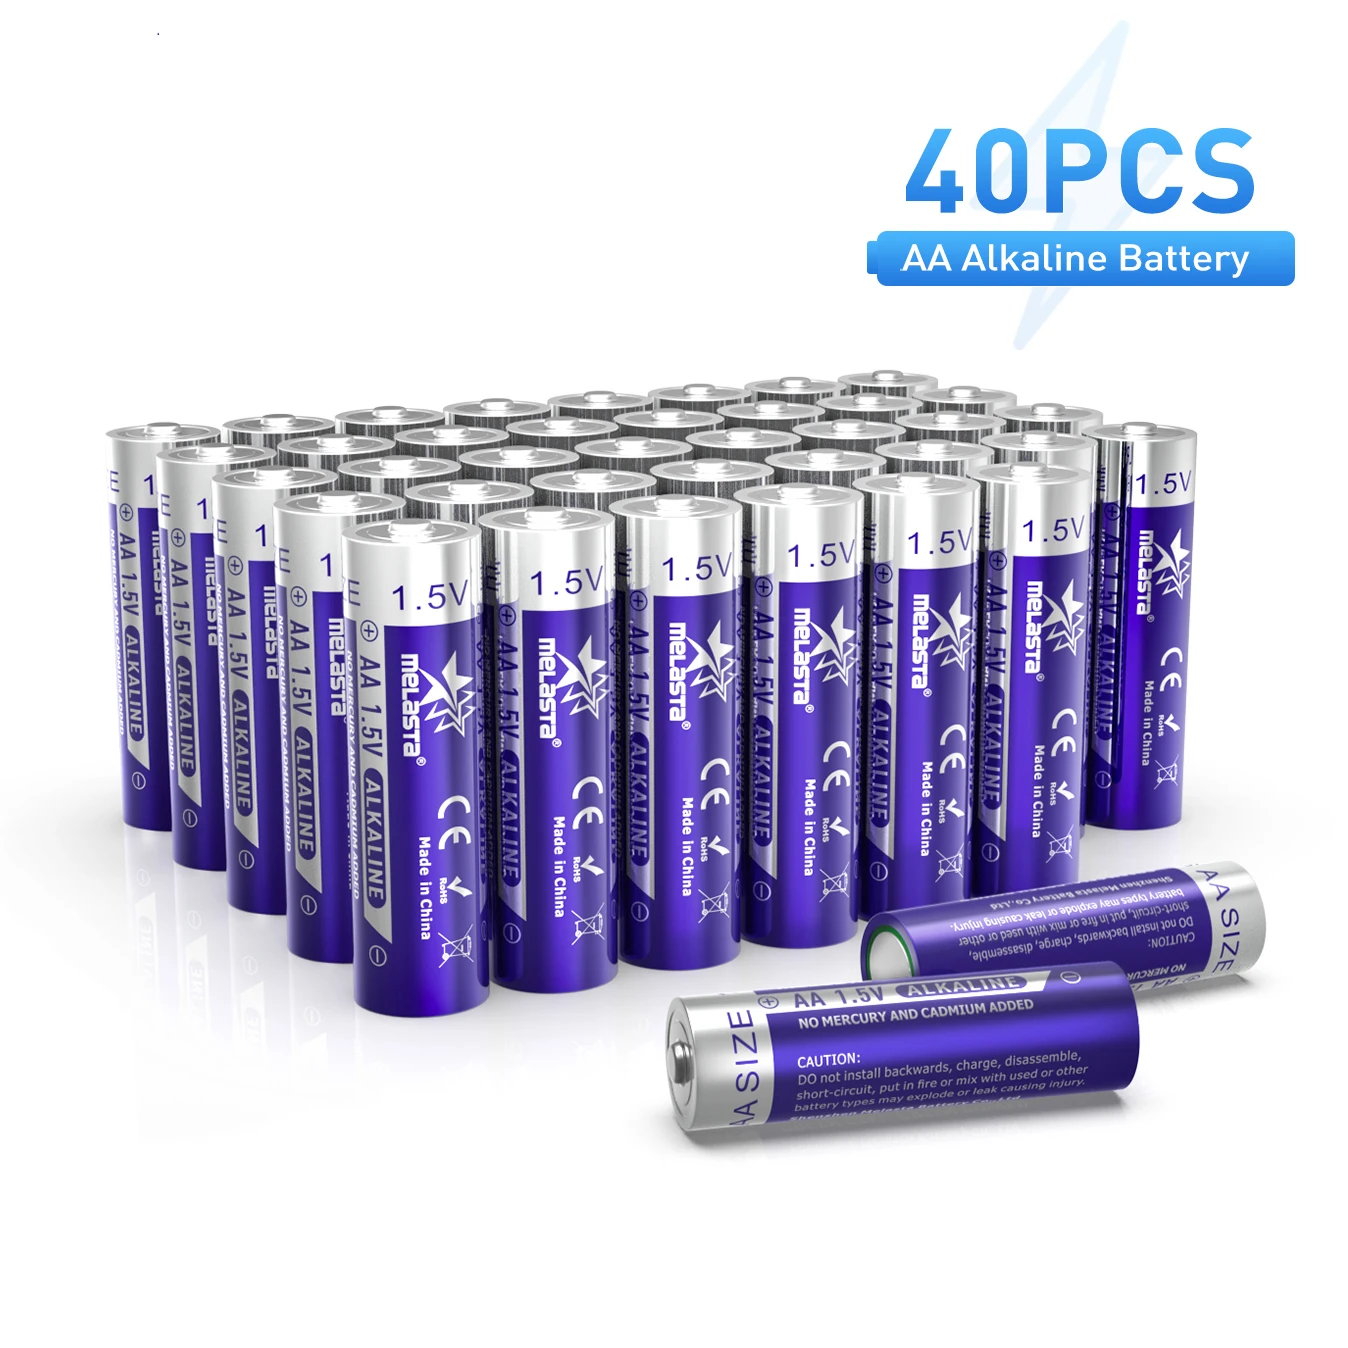 40 Щелочных Батареек 1,5 В Типа АА, Двойная Неперезаряжаемая Батарея для Часов, Дистанционных Игрушек, Электронных Устройств, Бытовых Аккумуляторов